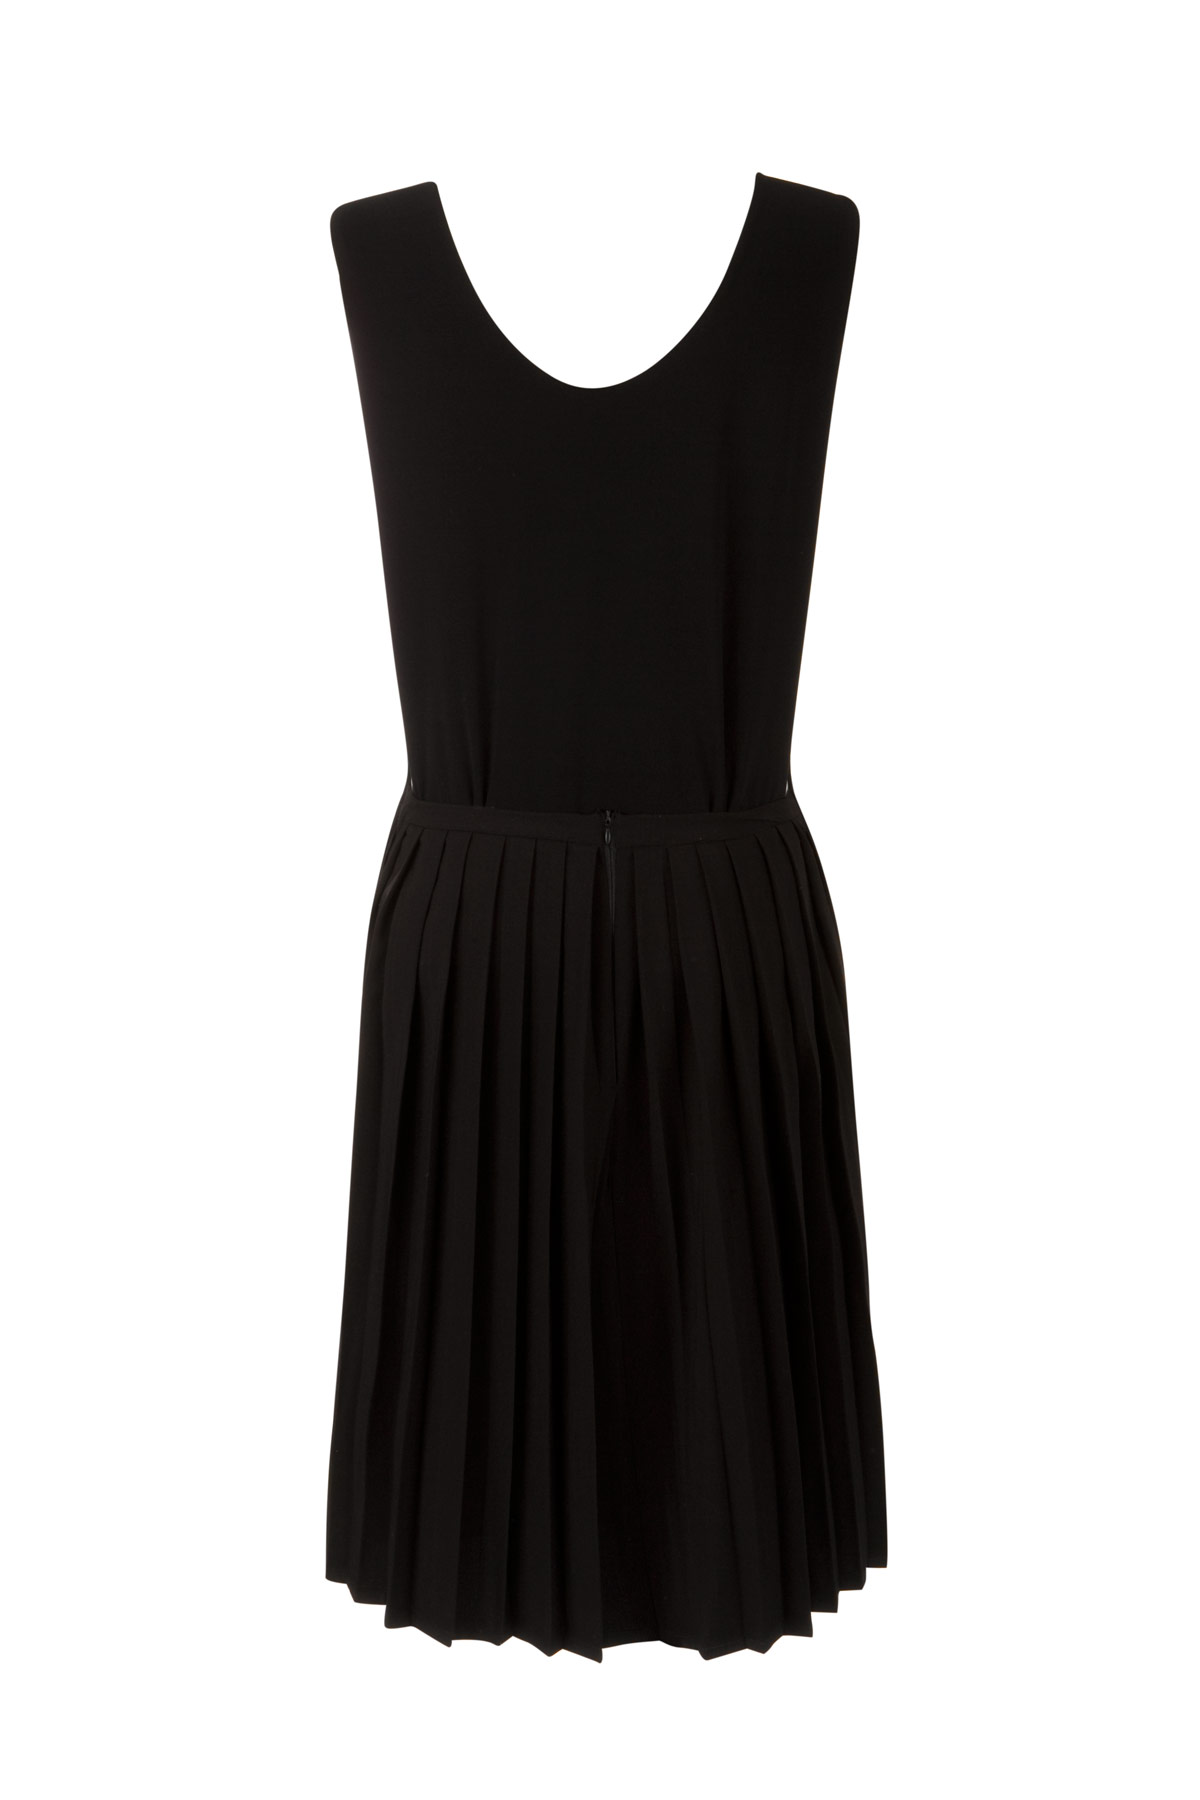 dress clipart black white - photo #40